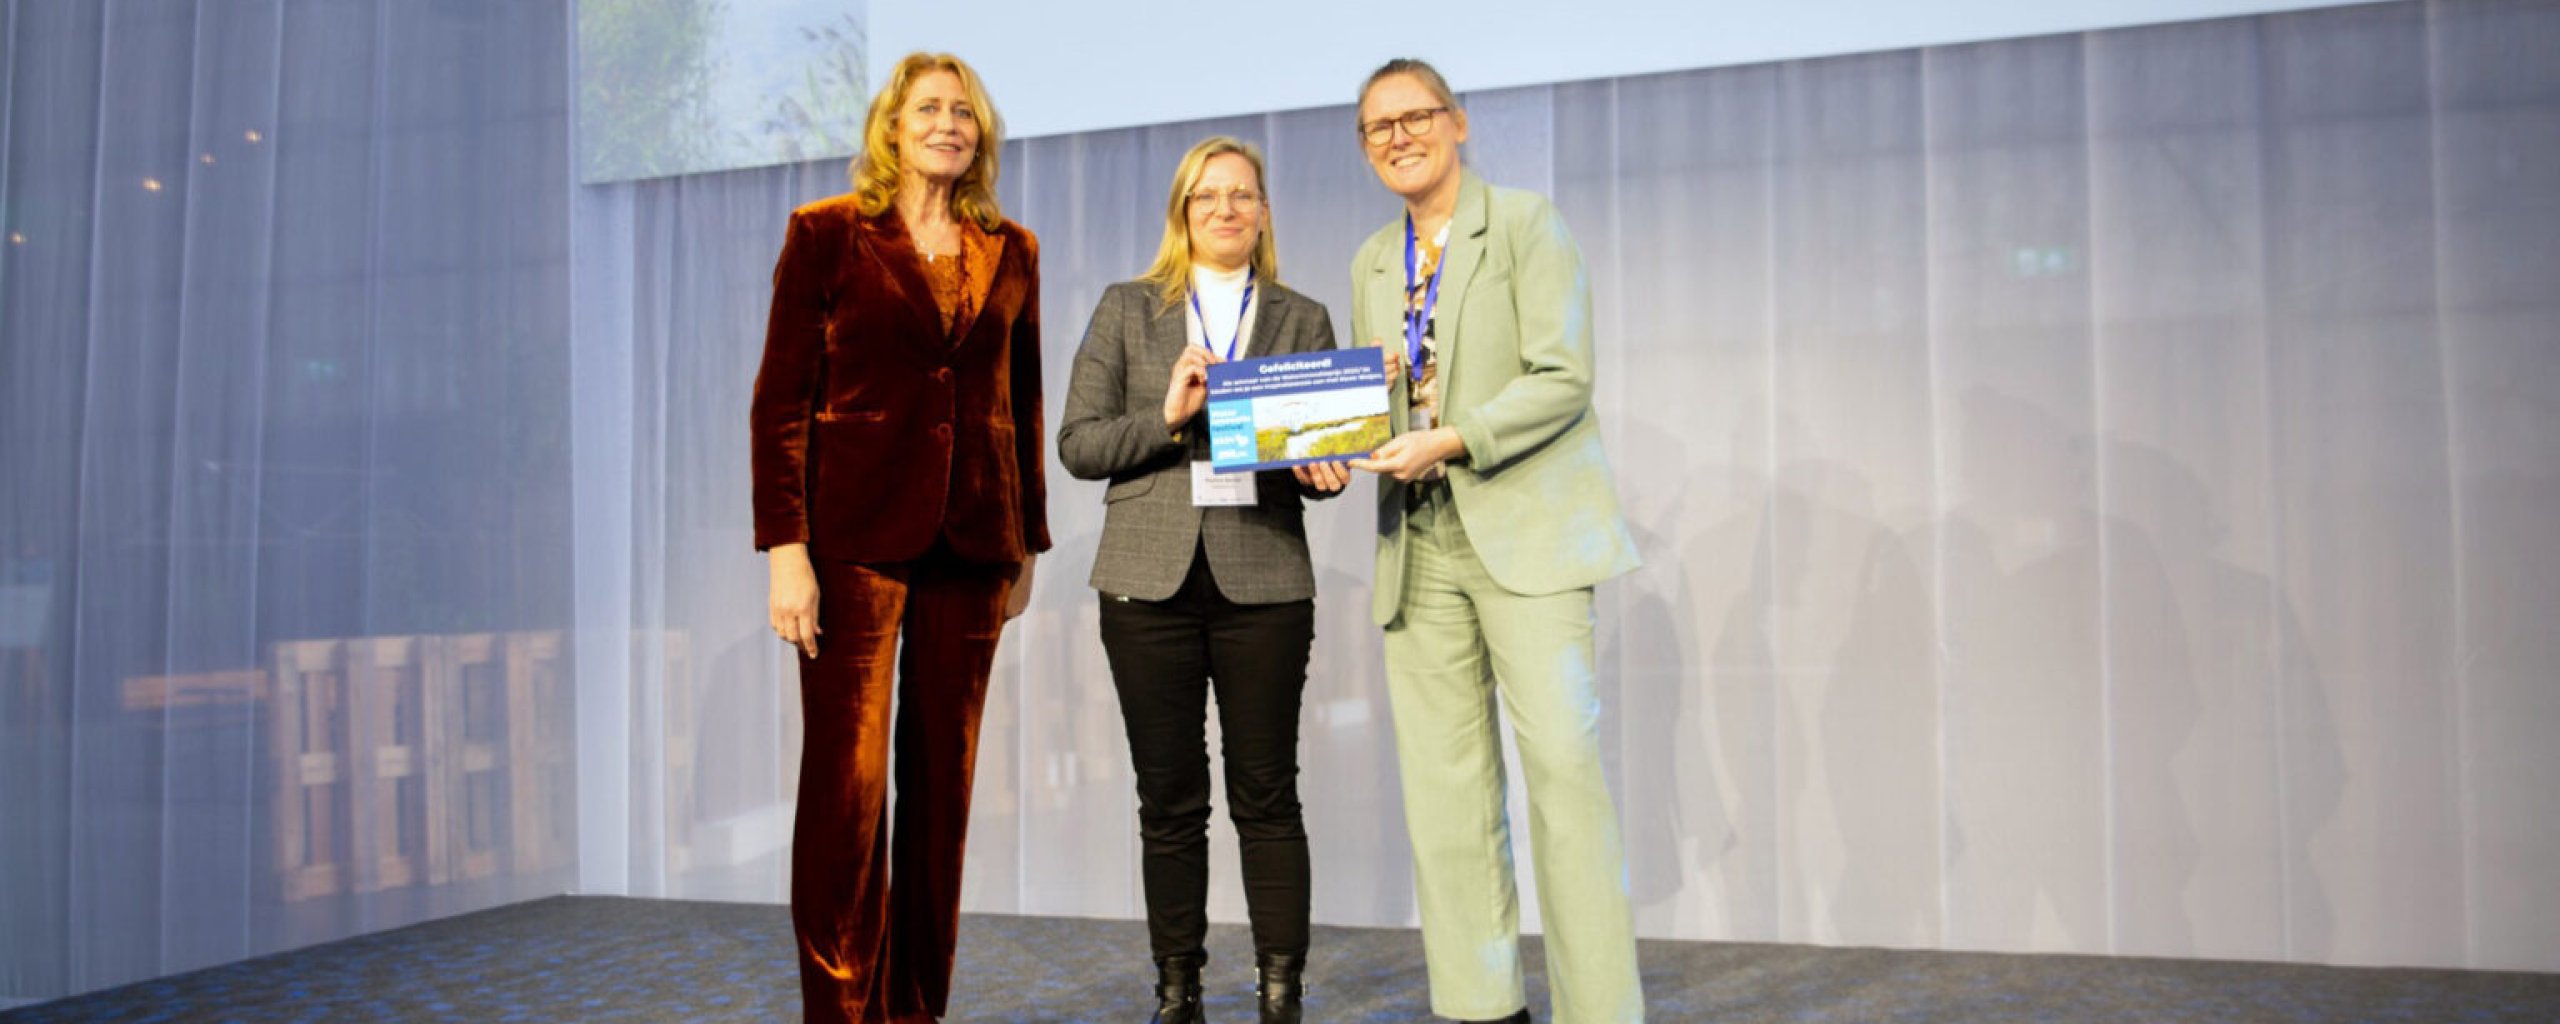 Luzette Kroon reikte de Publieksprijs uit aan Waterschap Aa en Maas